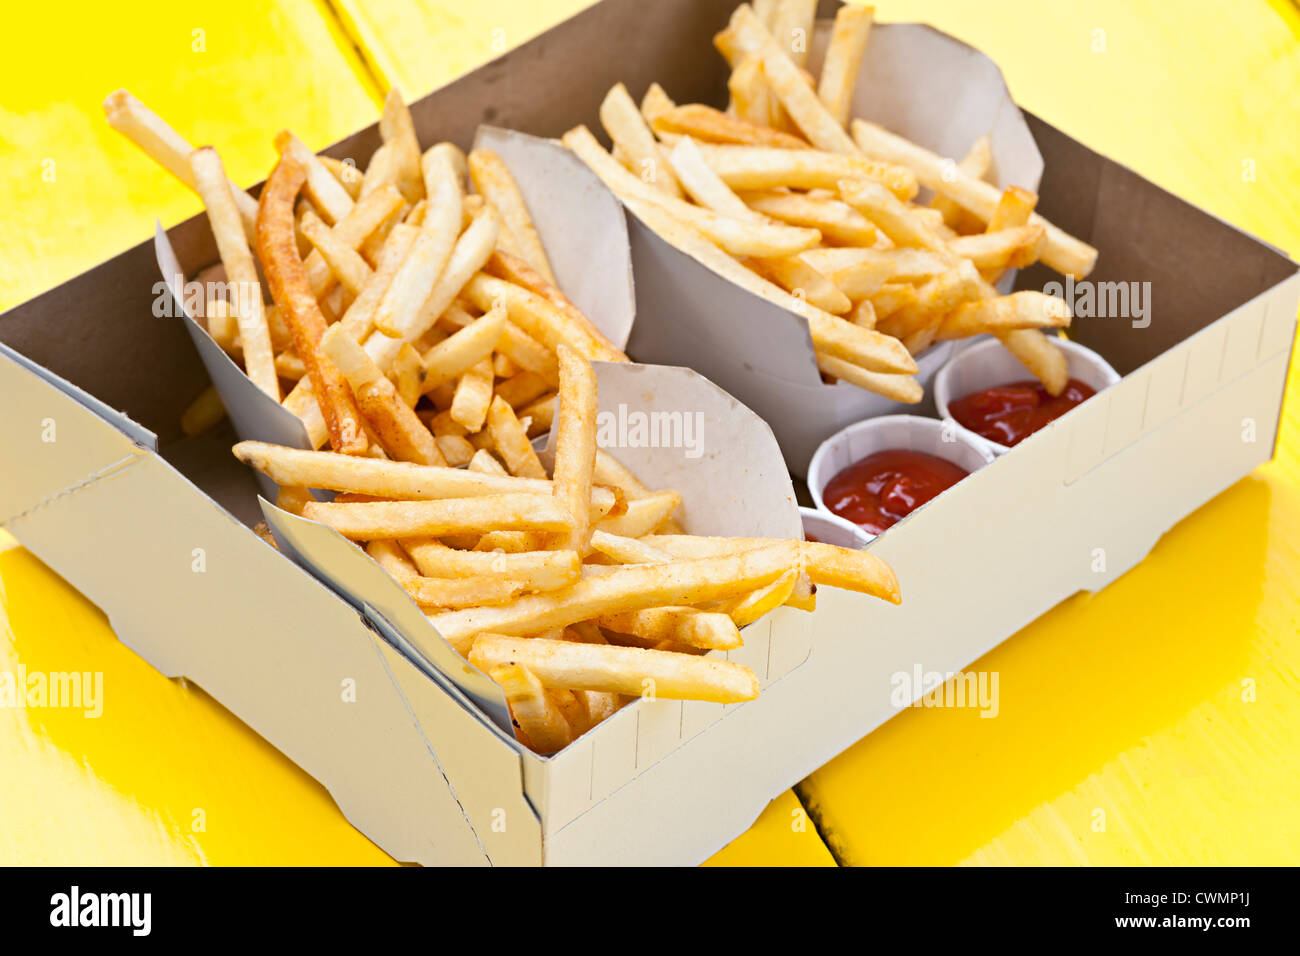 Porciones de papas fritas con salsa de tomate en caja de cartón para llevar Foto de stock